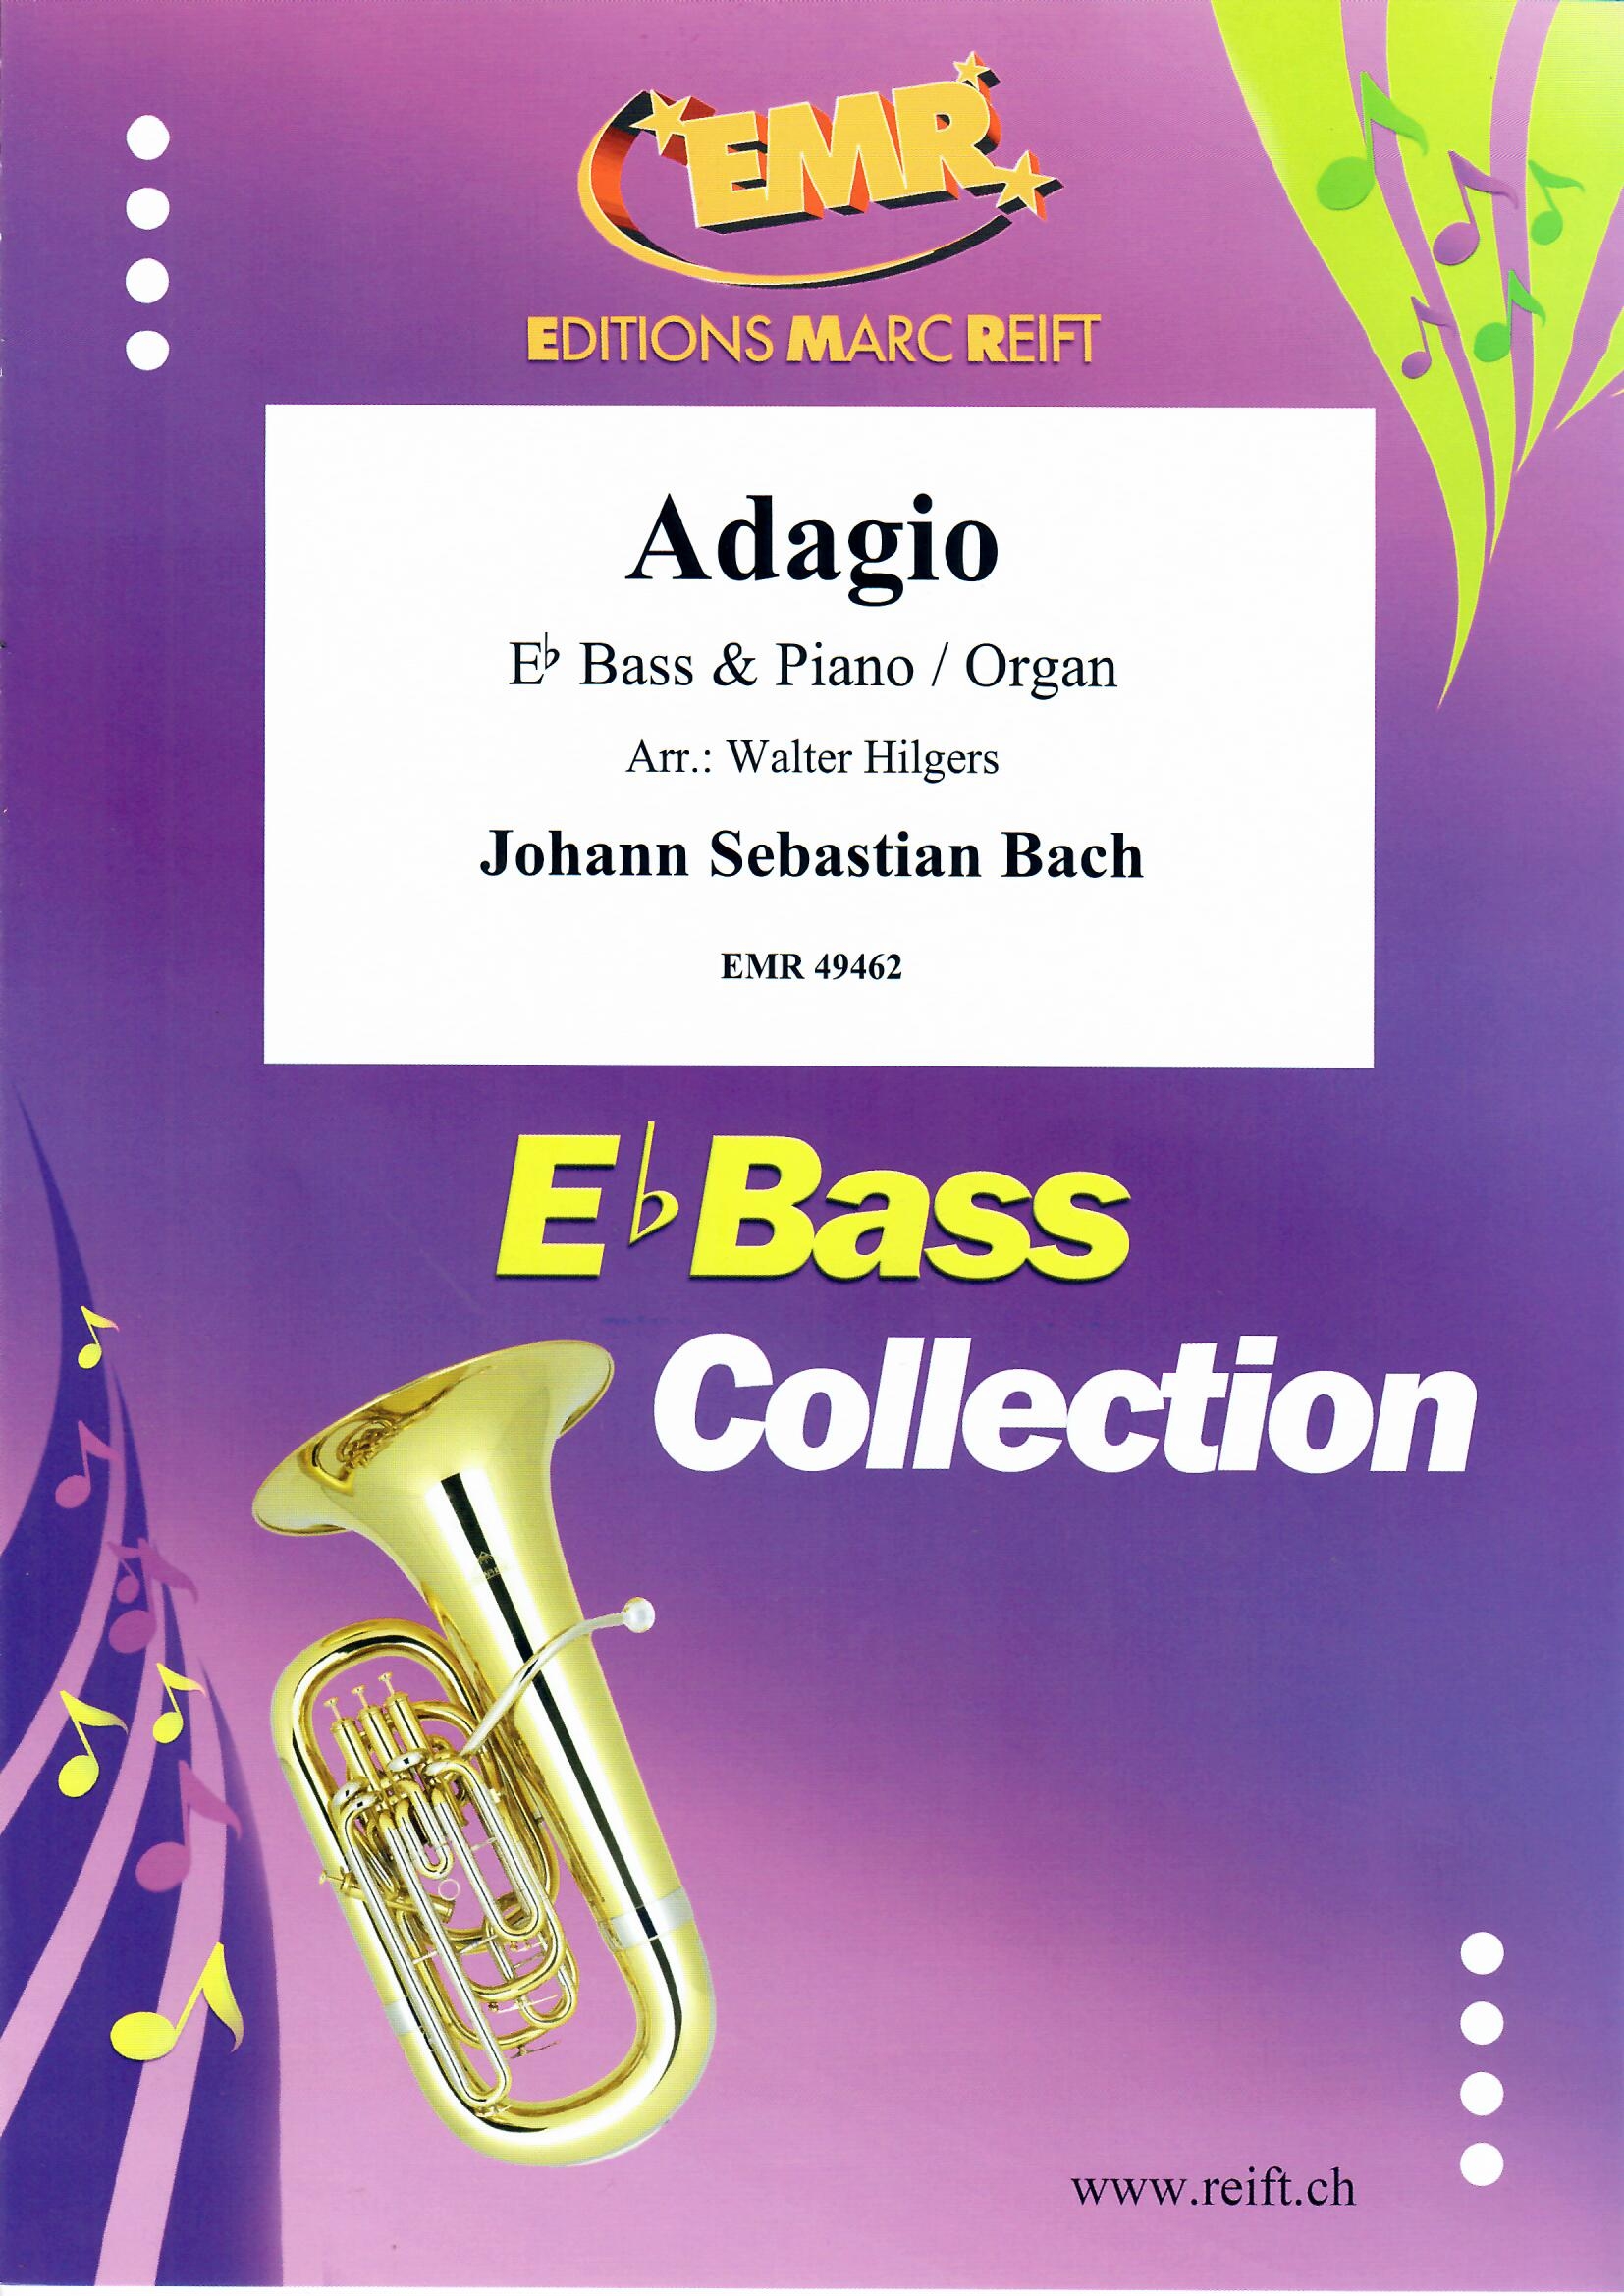 ADAGIO _ Eb. Bass & Organ